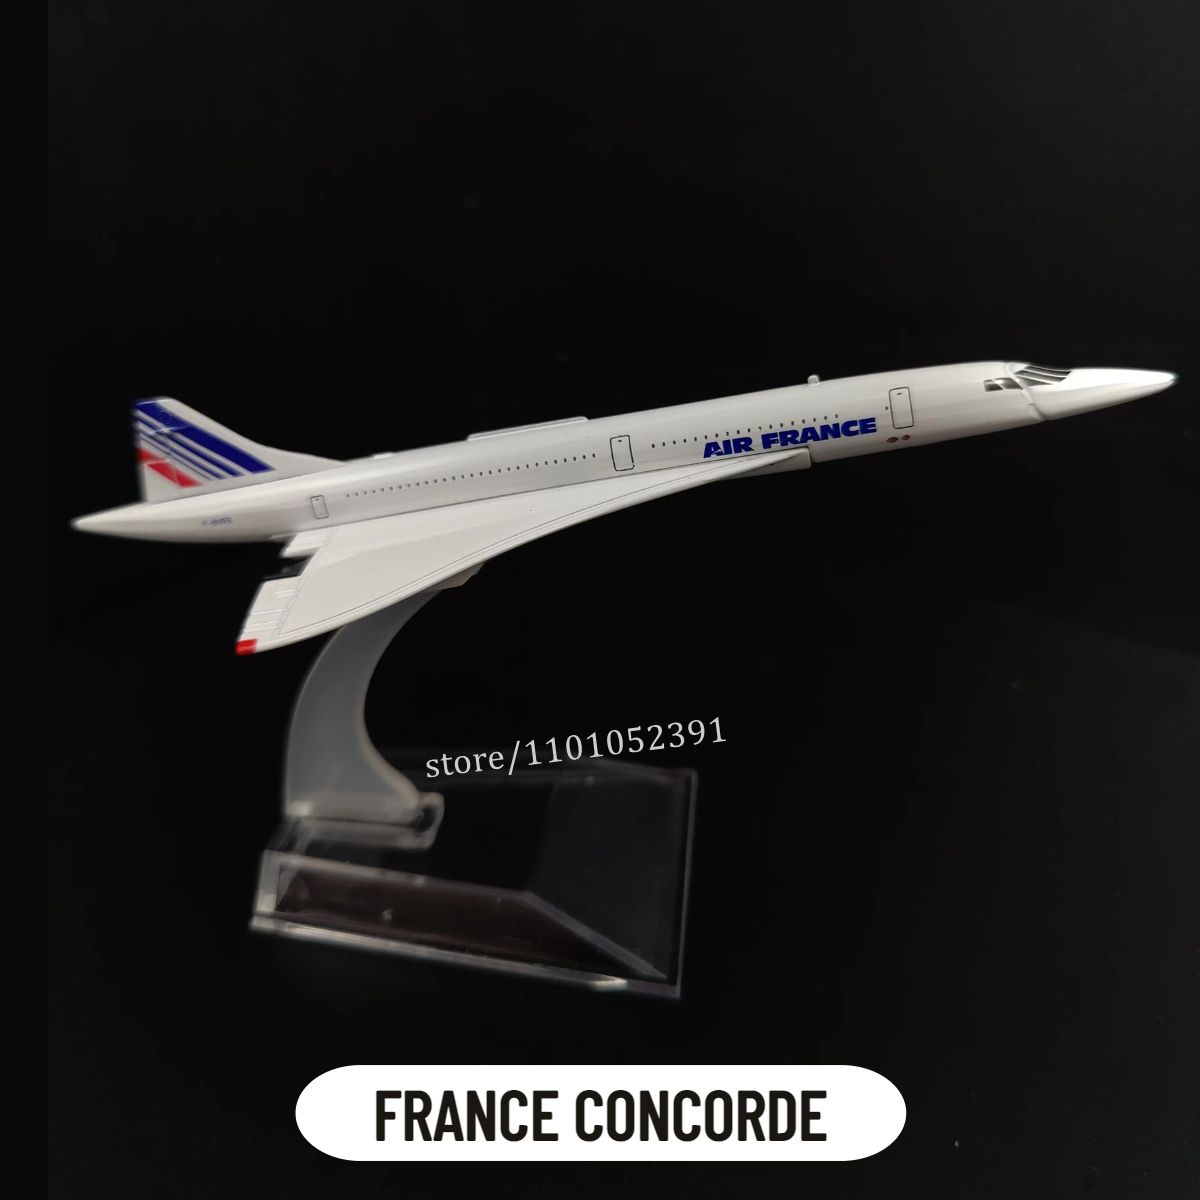 158. France Concorde